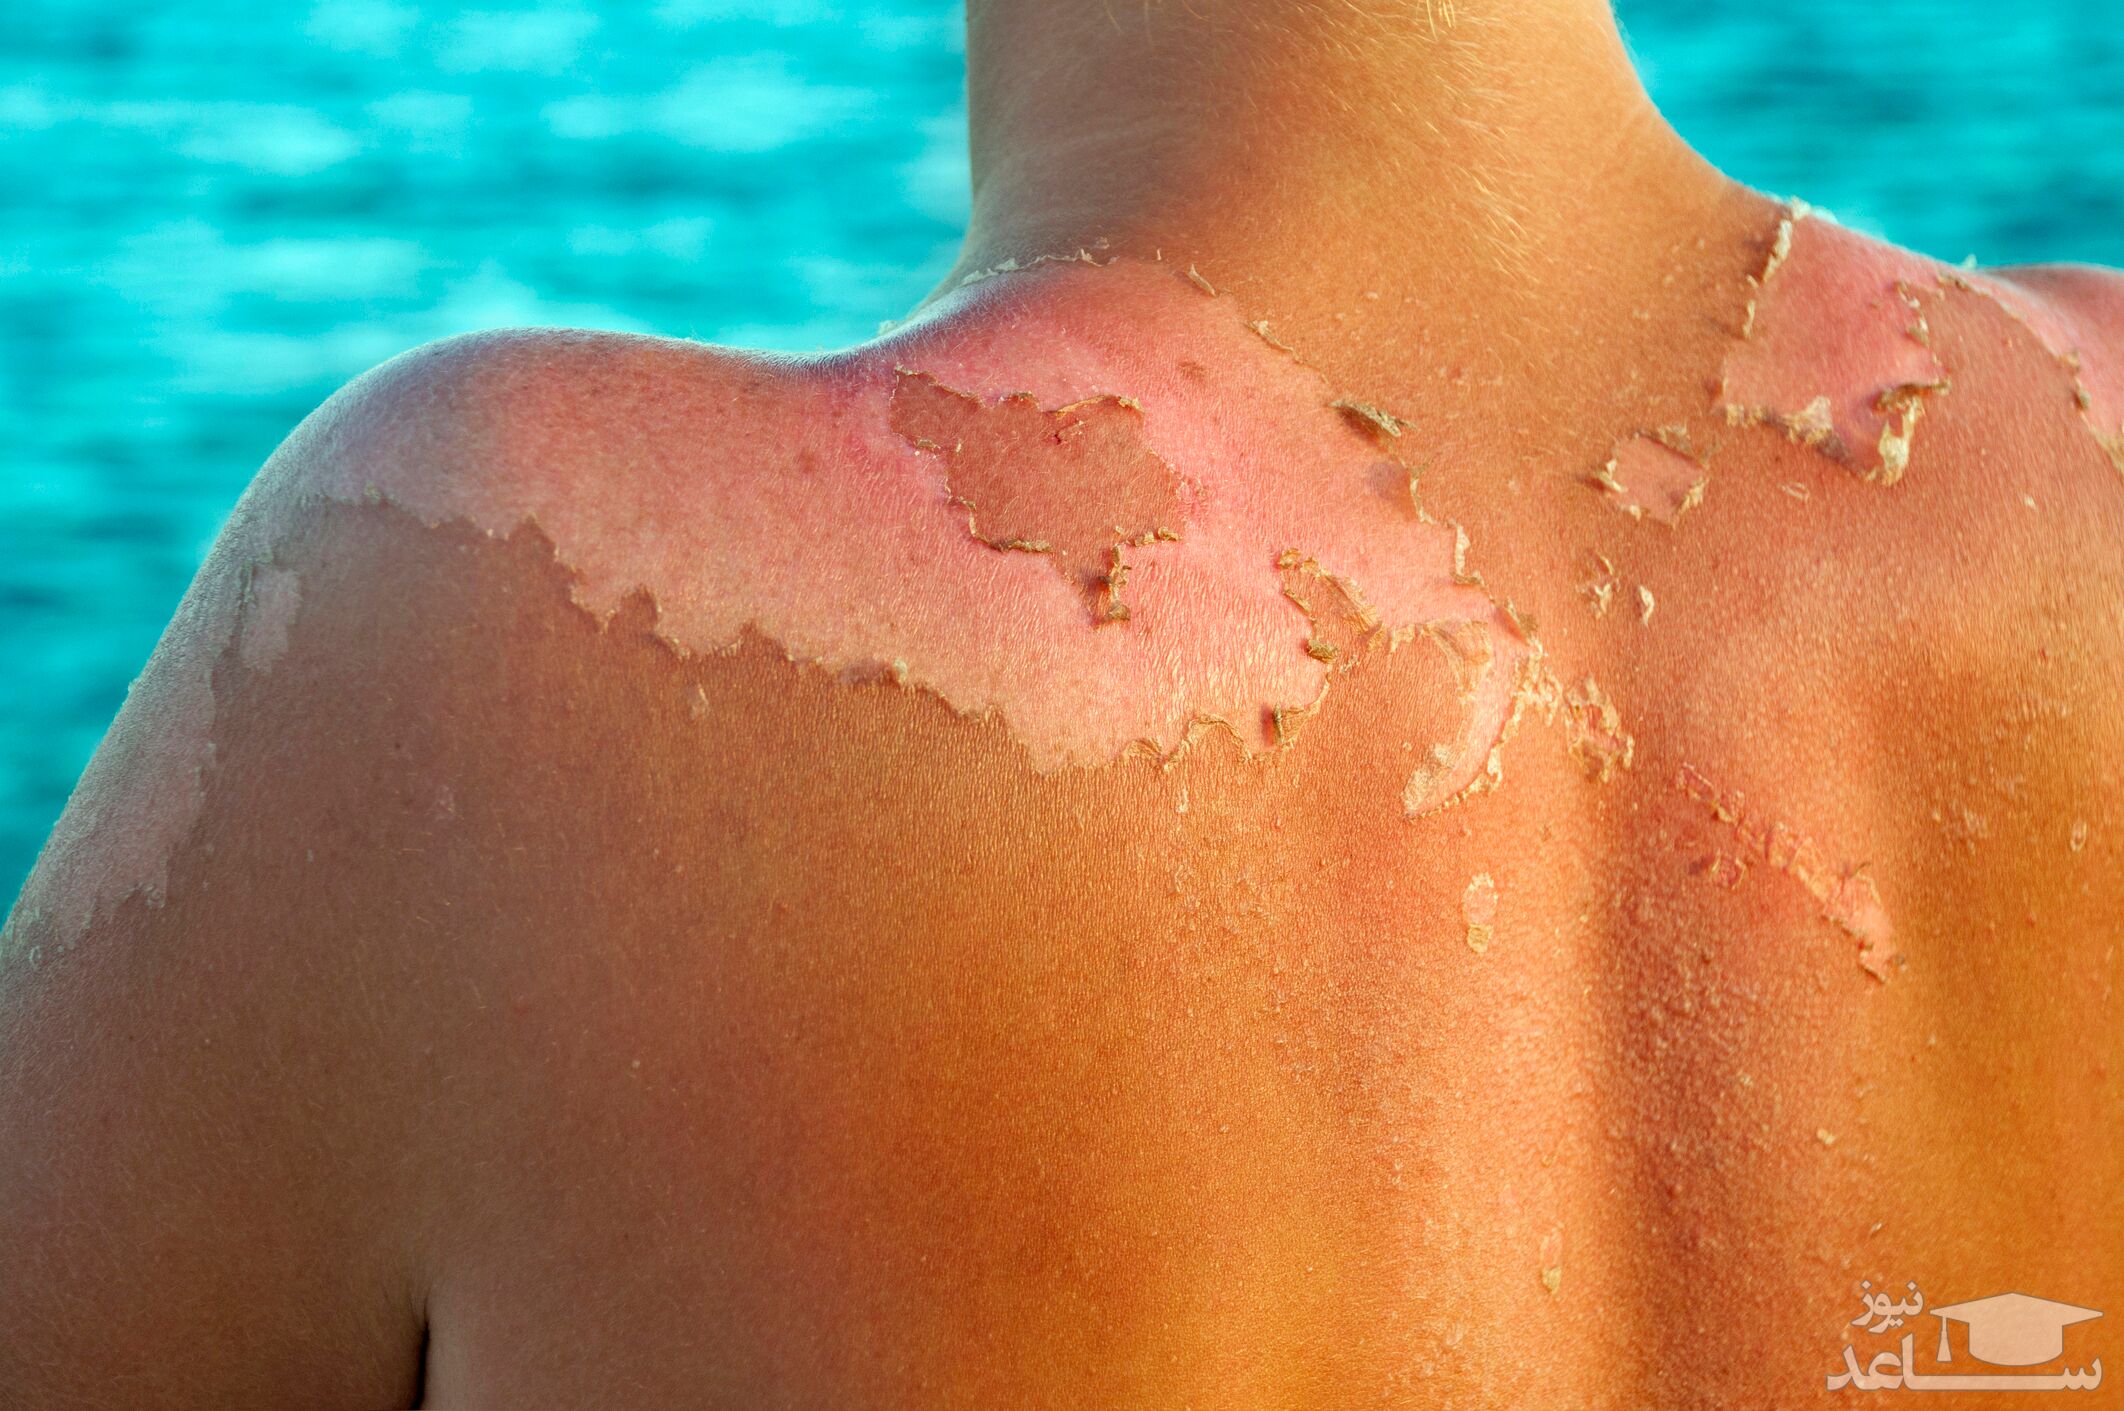 درمان آفتاب سوختگی با استفاده از داروهای گیاهی و طب سننتی